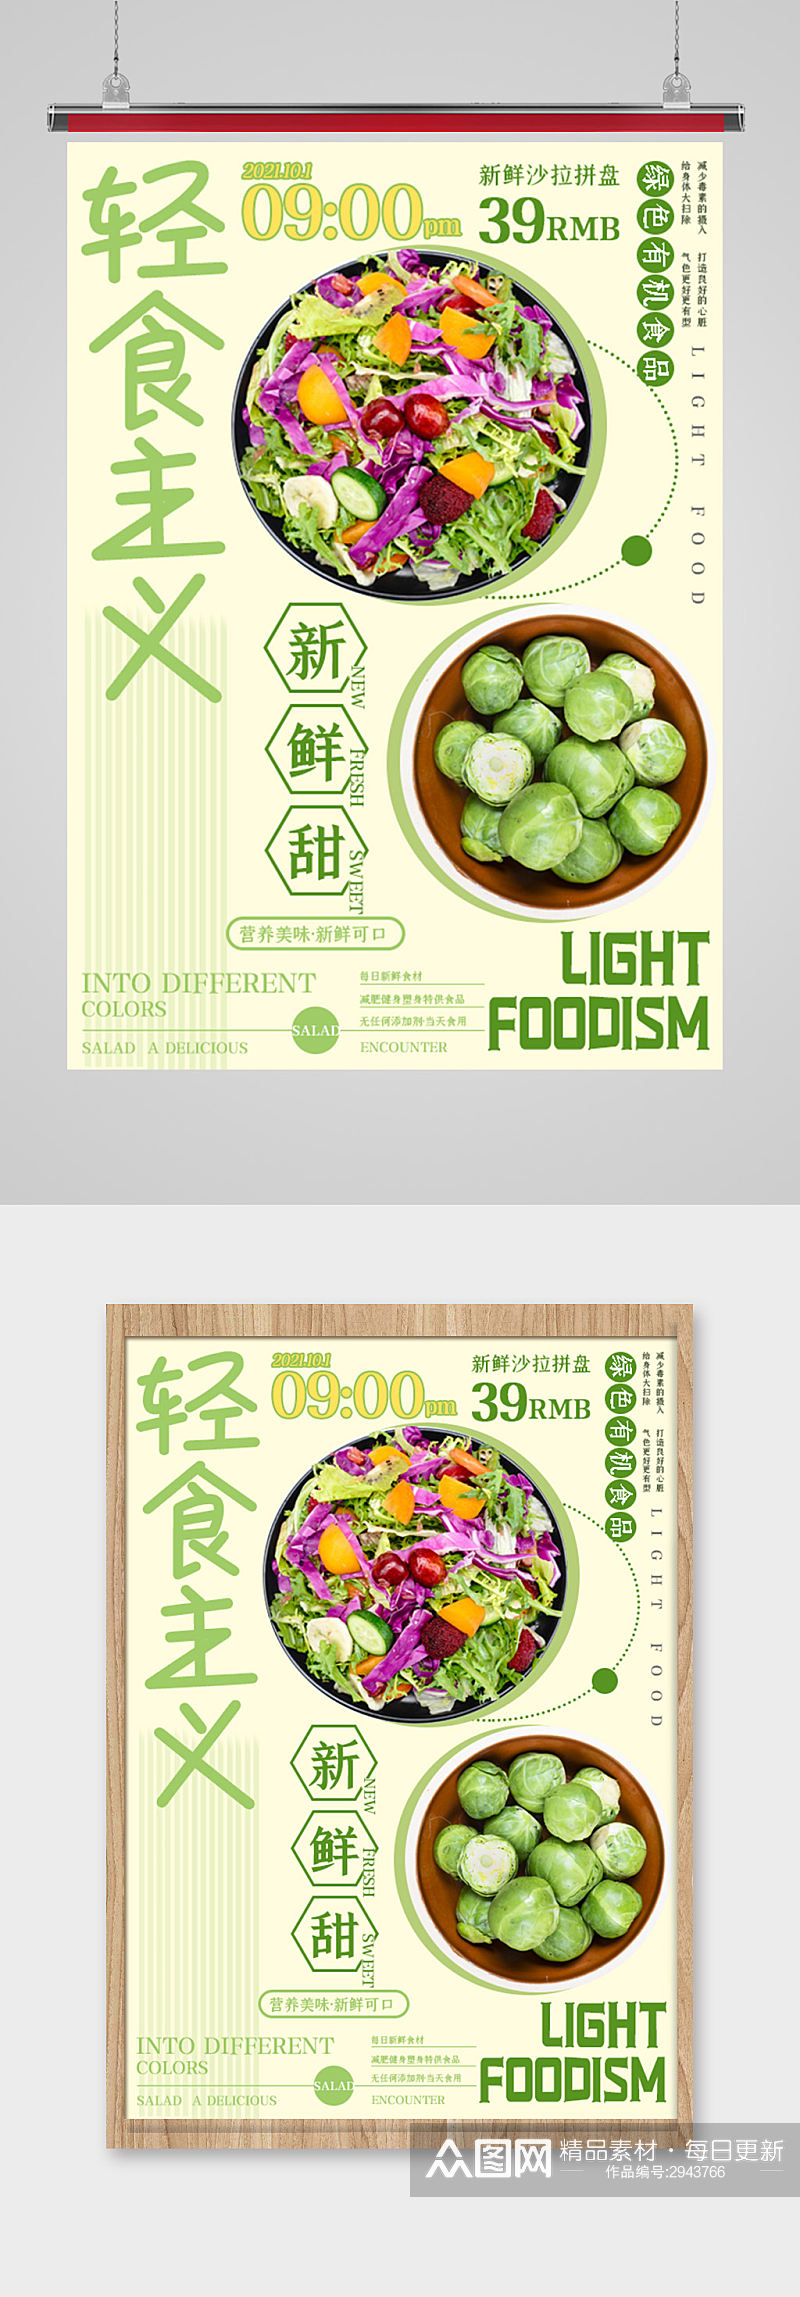 轻食主义海报设计素材